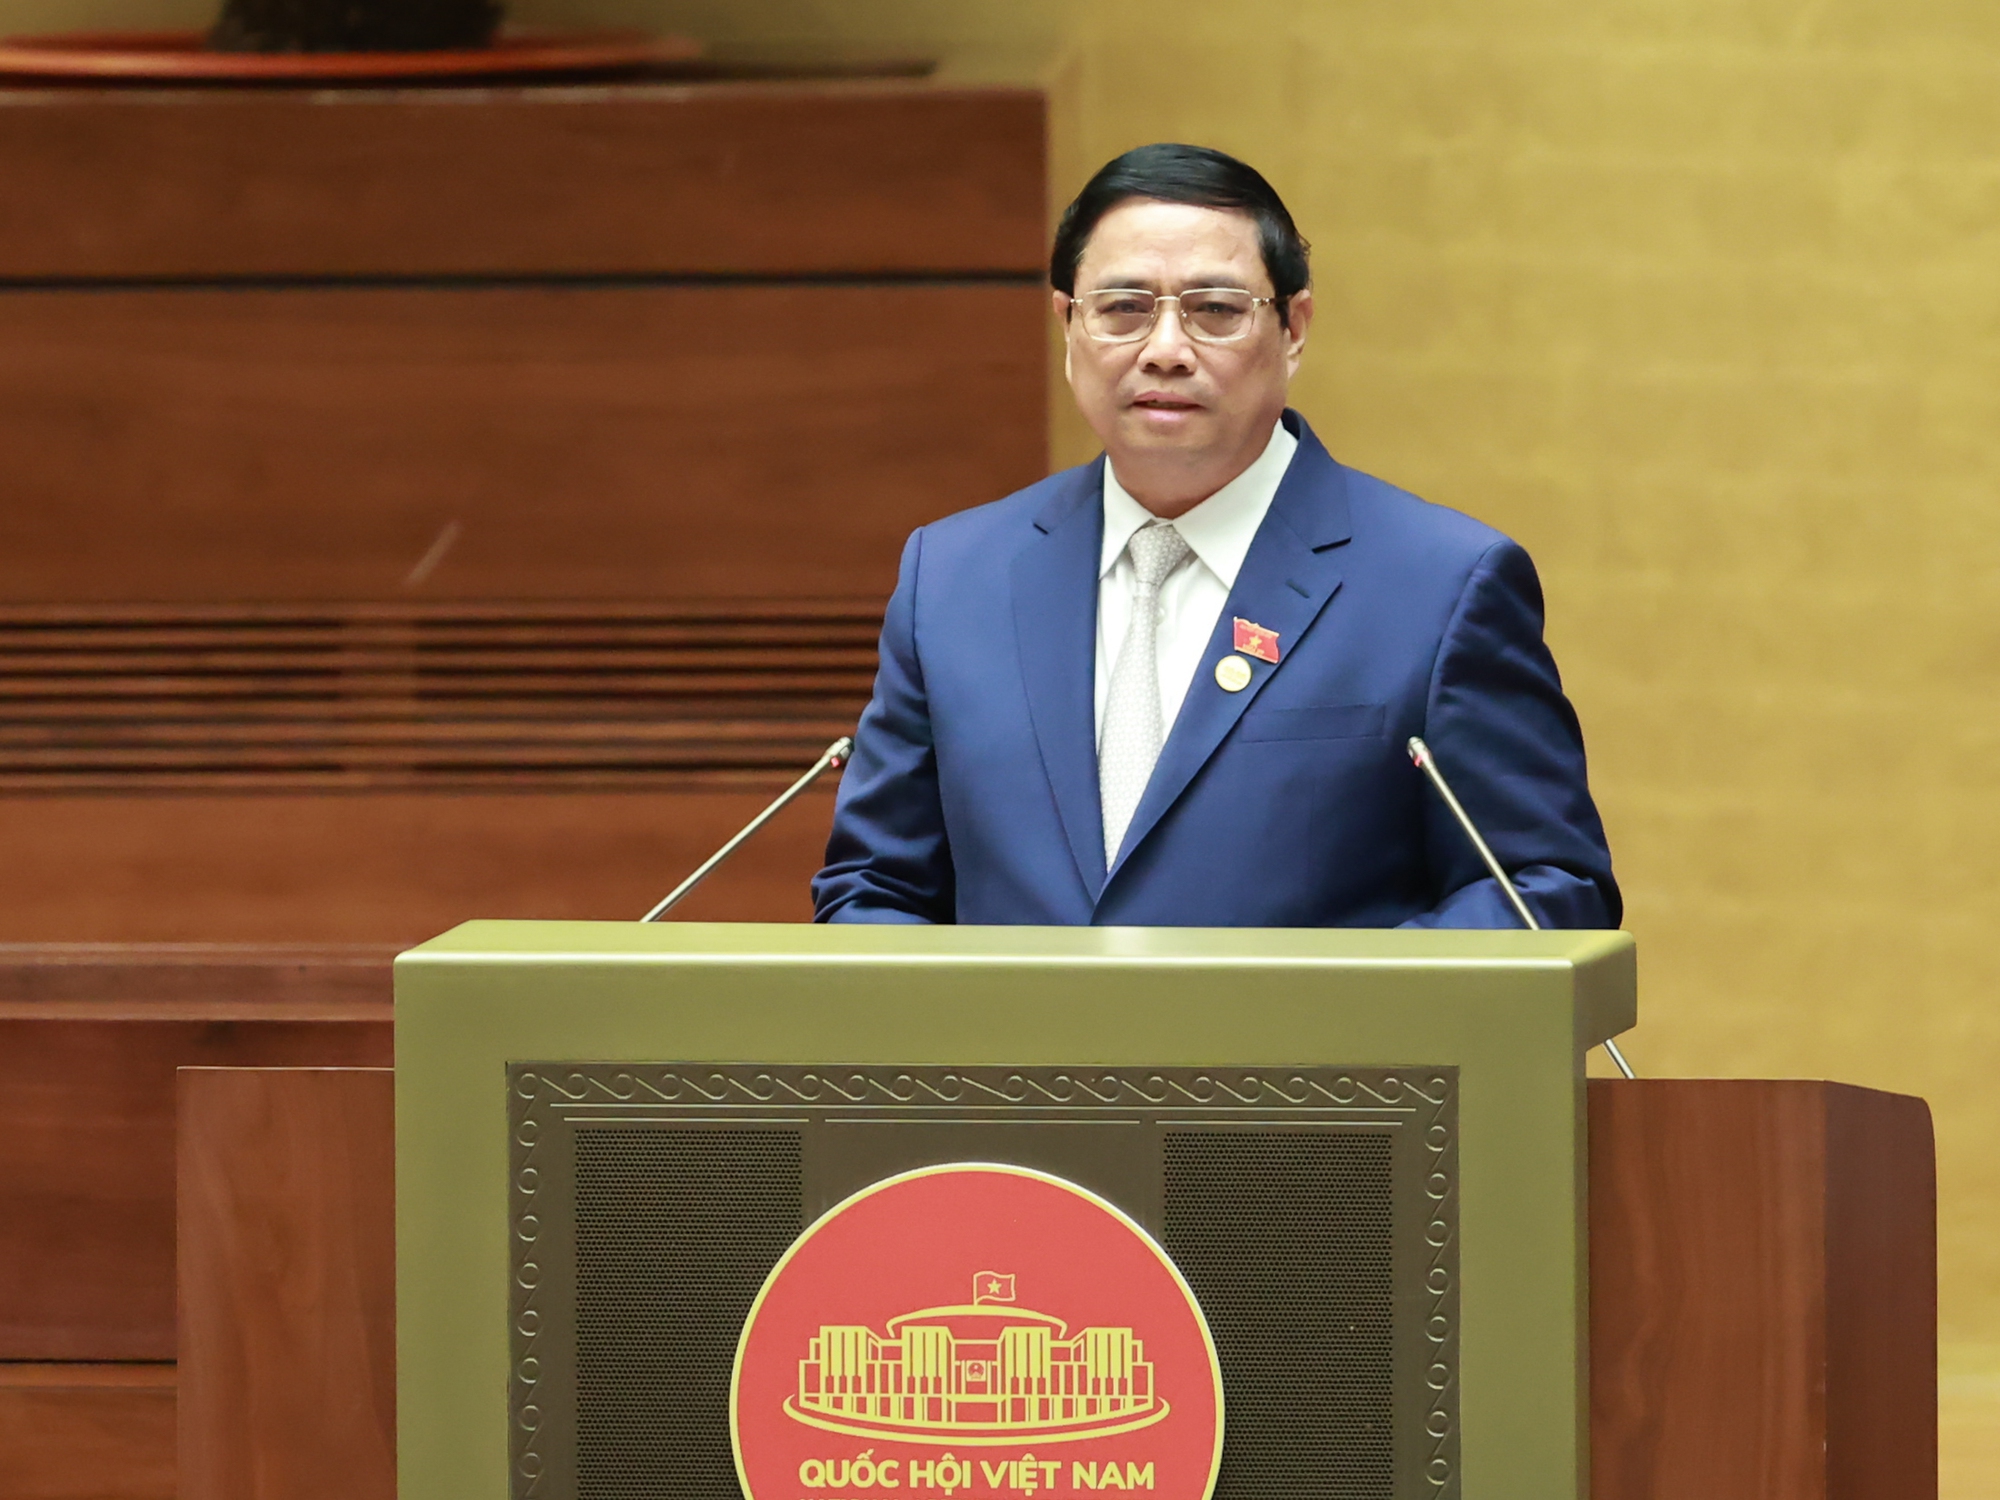 TOÀN VĂN: Báo cáo của Chính phủ do Thủ tướng Phạm Minh Chính trình bày tại phiên khai mạc Kỳ họp thứ 6, Quốc hội khóa XV - Ảnh 1.